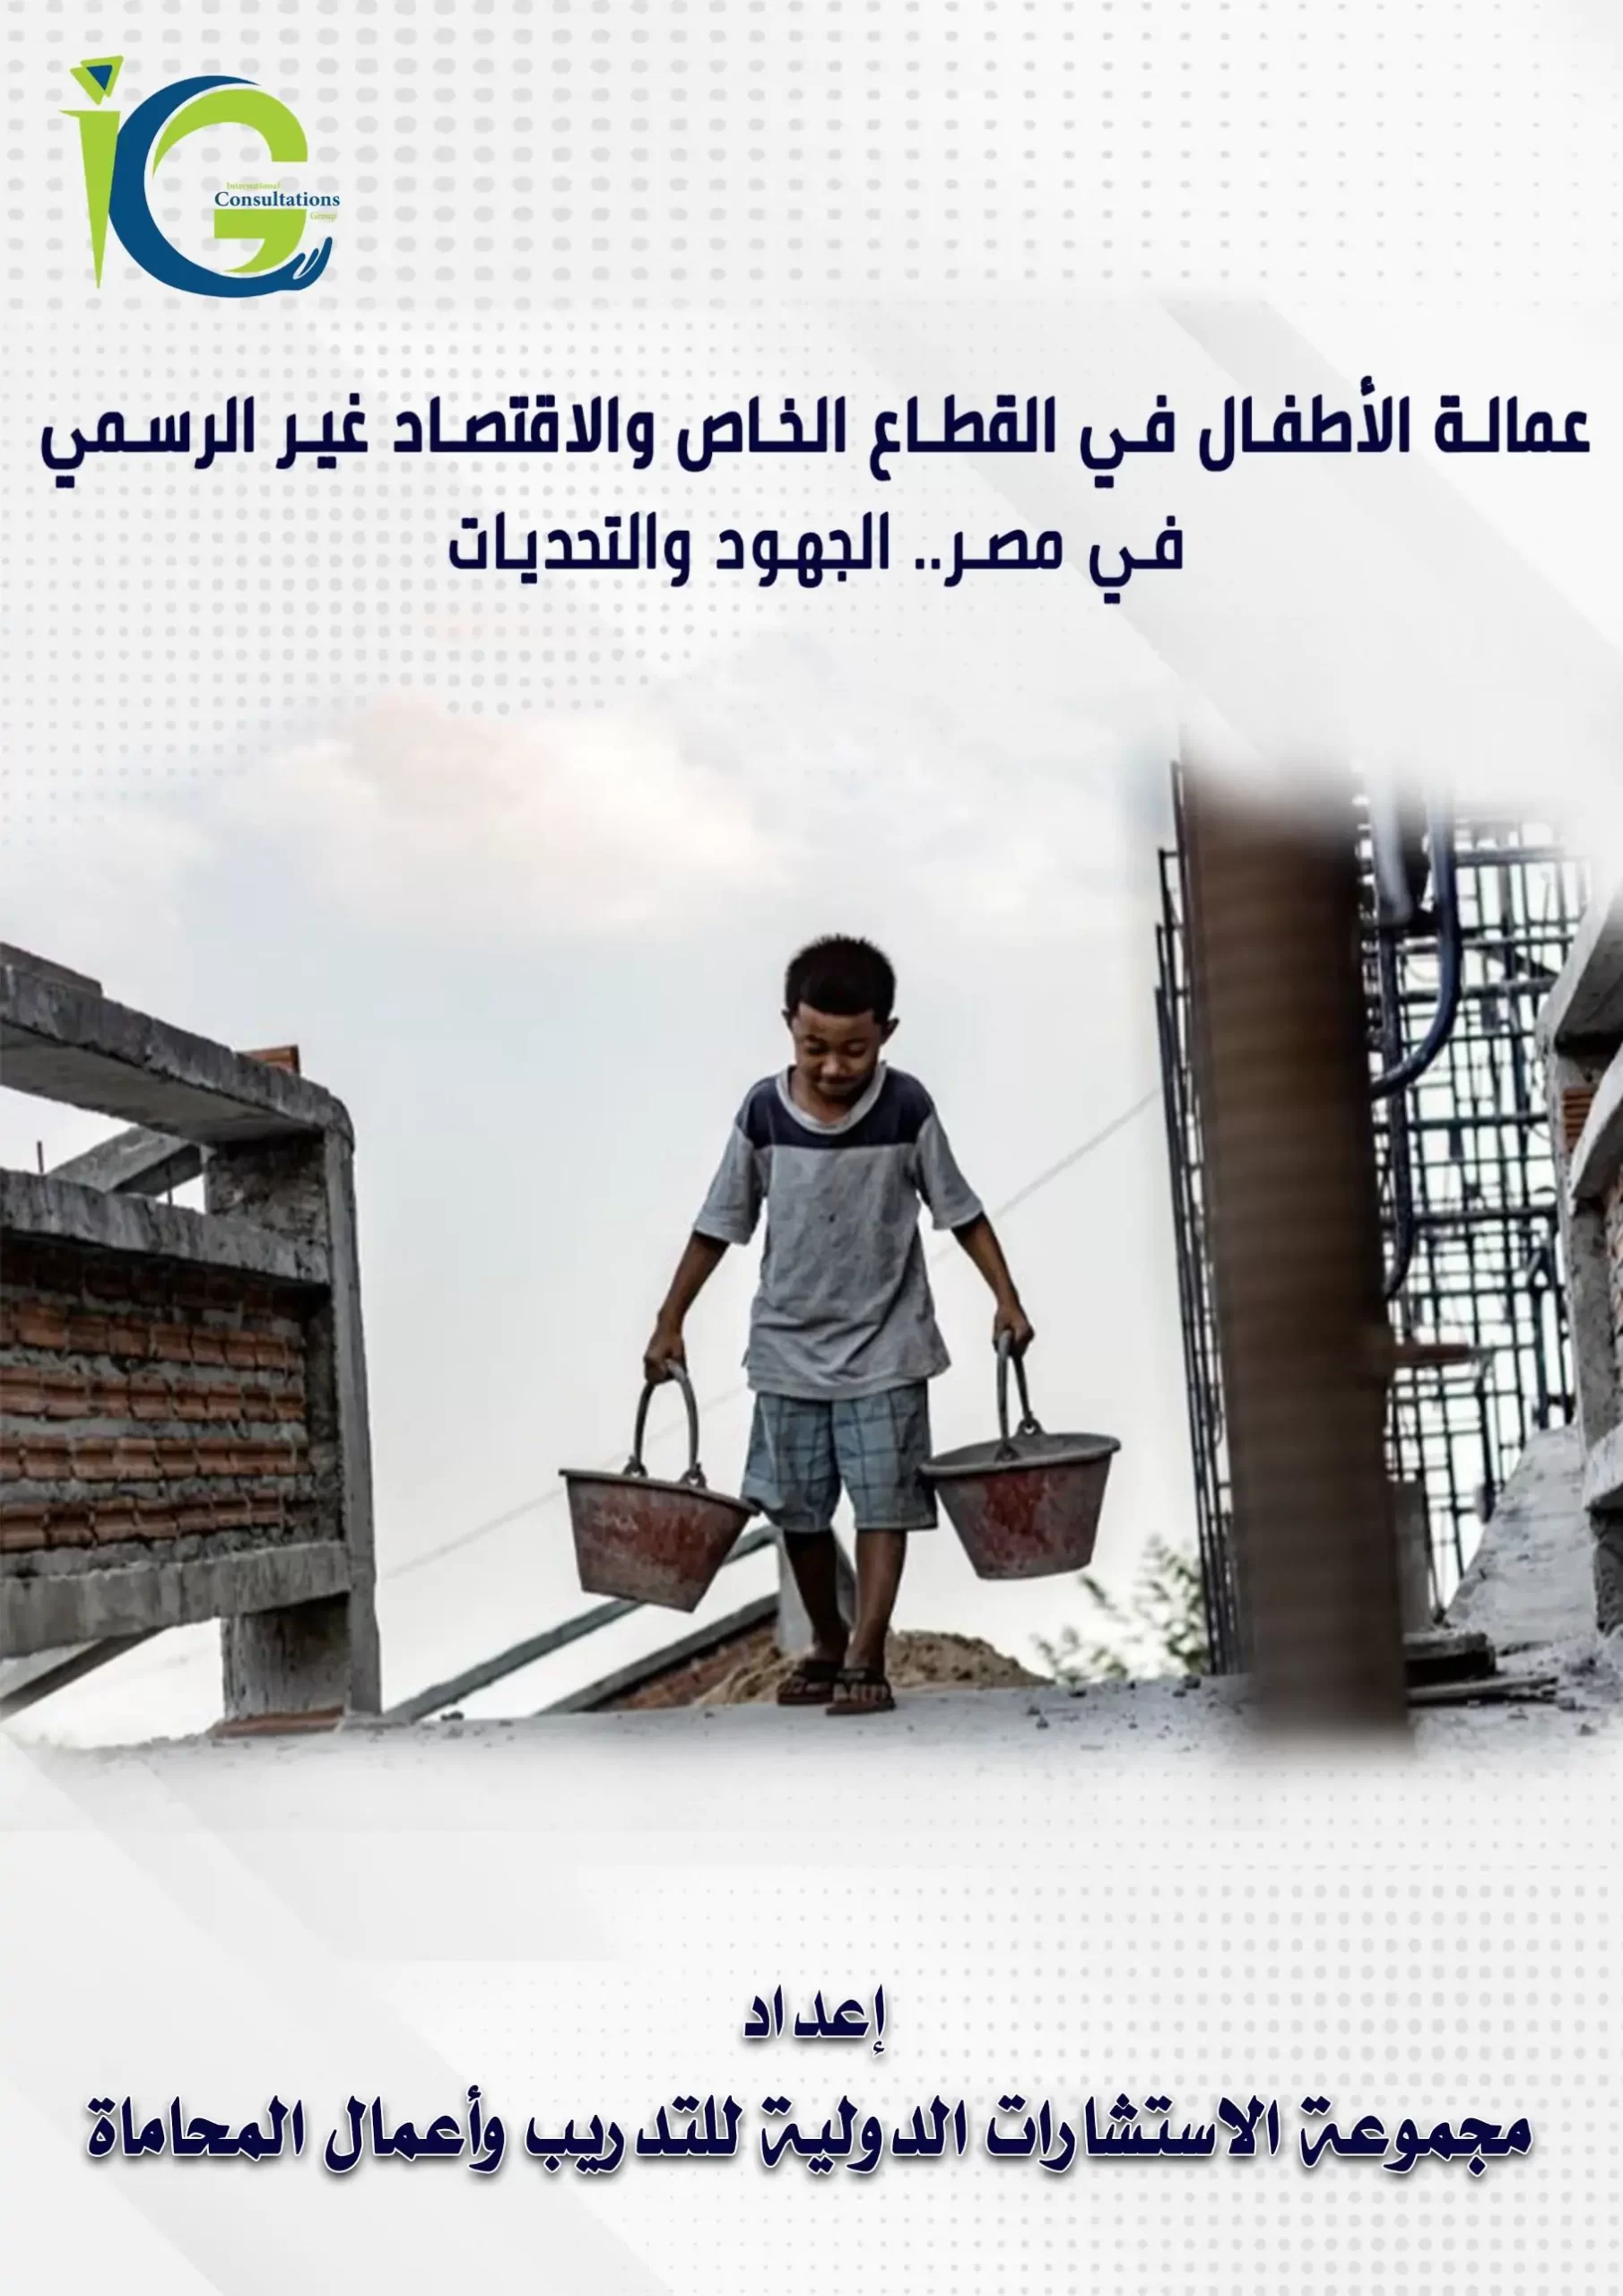 عمالة الأطفال في القطاع الخاص والاقتصاد غير الرسمي في مصر